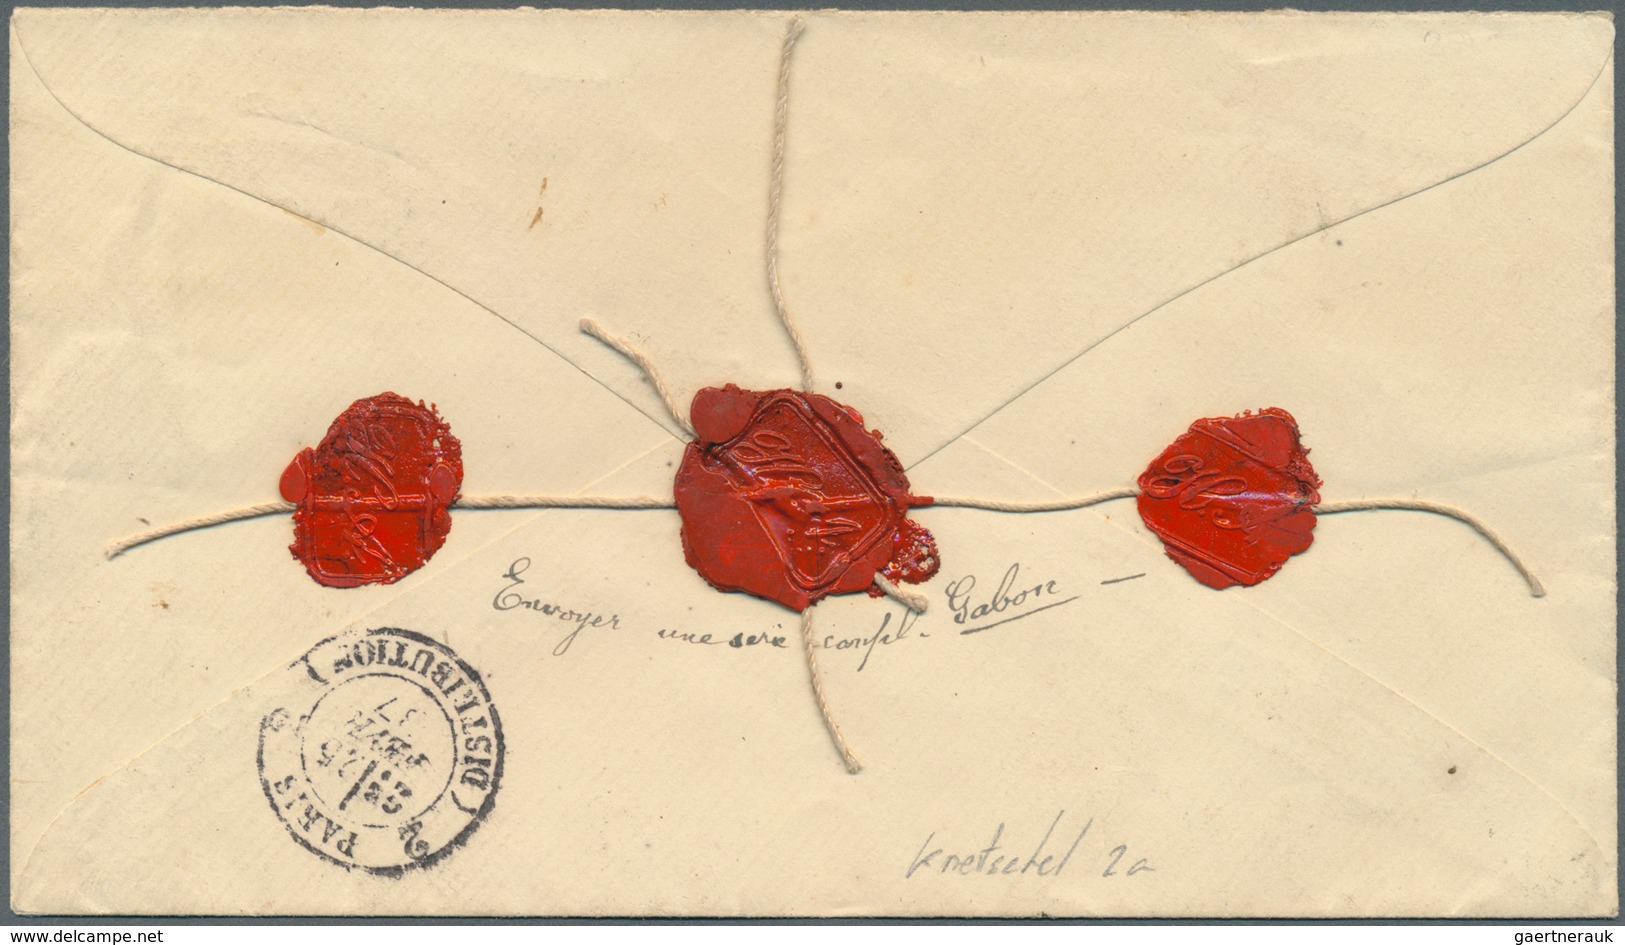 Argentinien - Ganzsachen: 1887 Postal Stationery Envelope 8c. Red Uprated 1878 'Manuel Belgrano' 16c - Ganzsachen